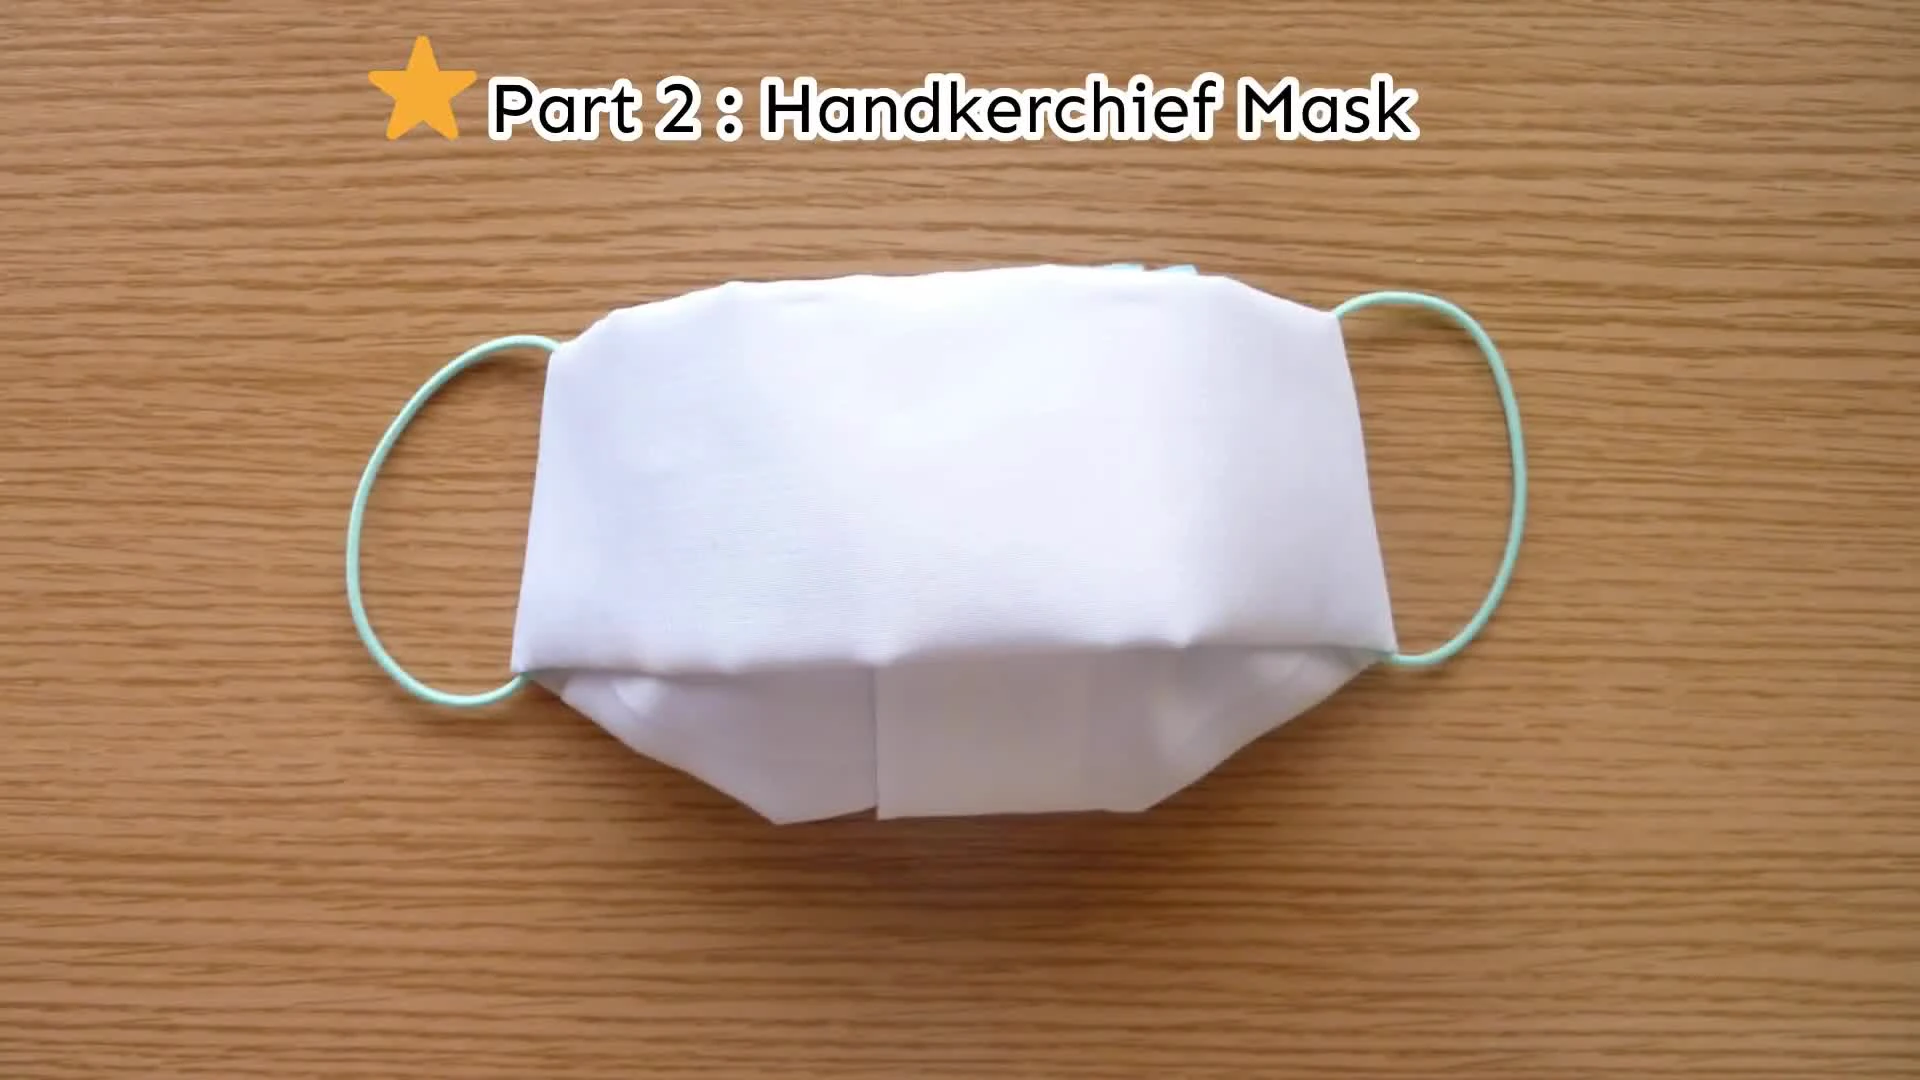 Как сделать маску из бумаги своими руками: мастер-класс с фото и пошаговой инструкцией